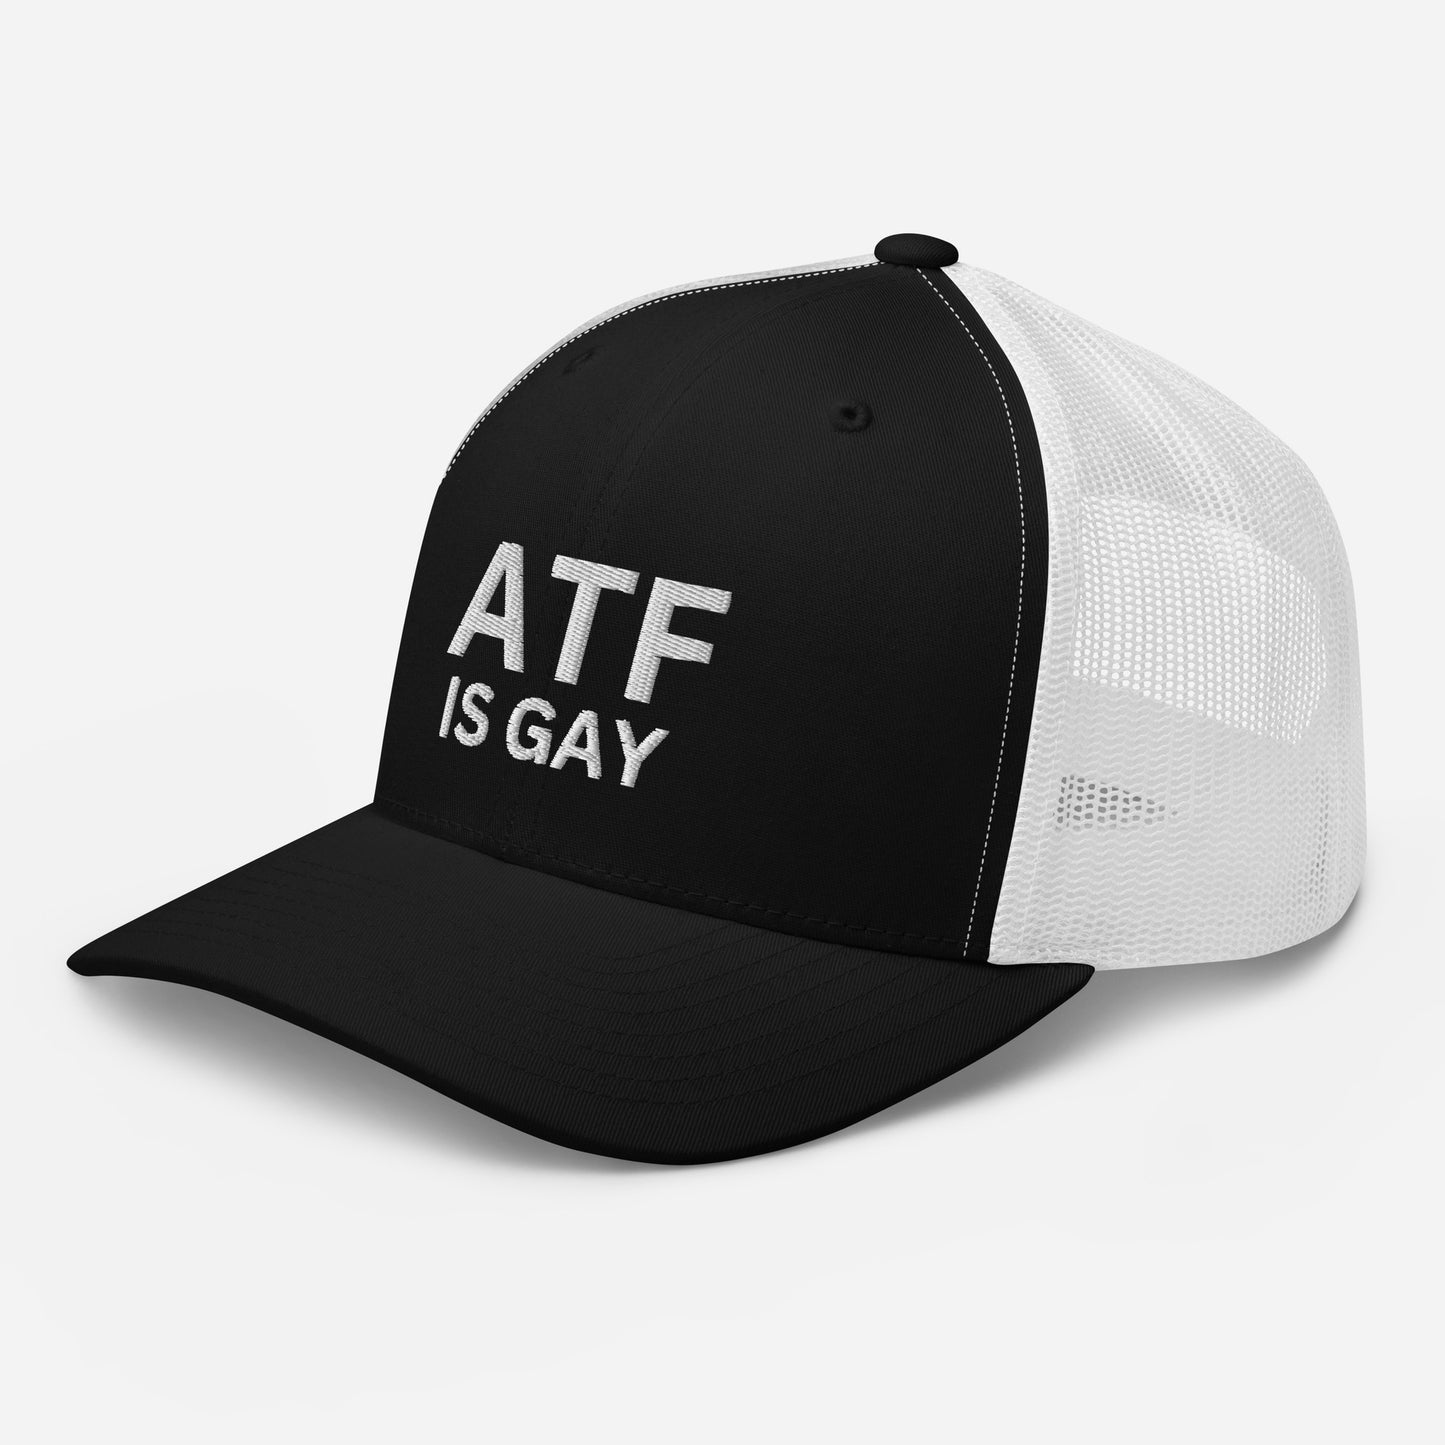 ATF is Gay Trucker Hat